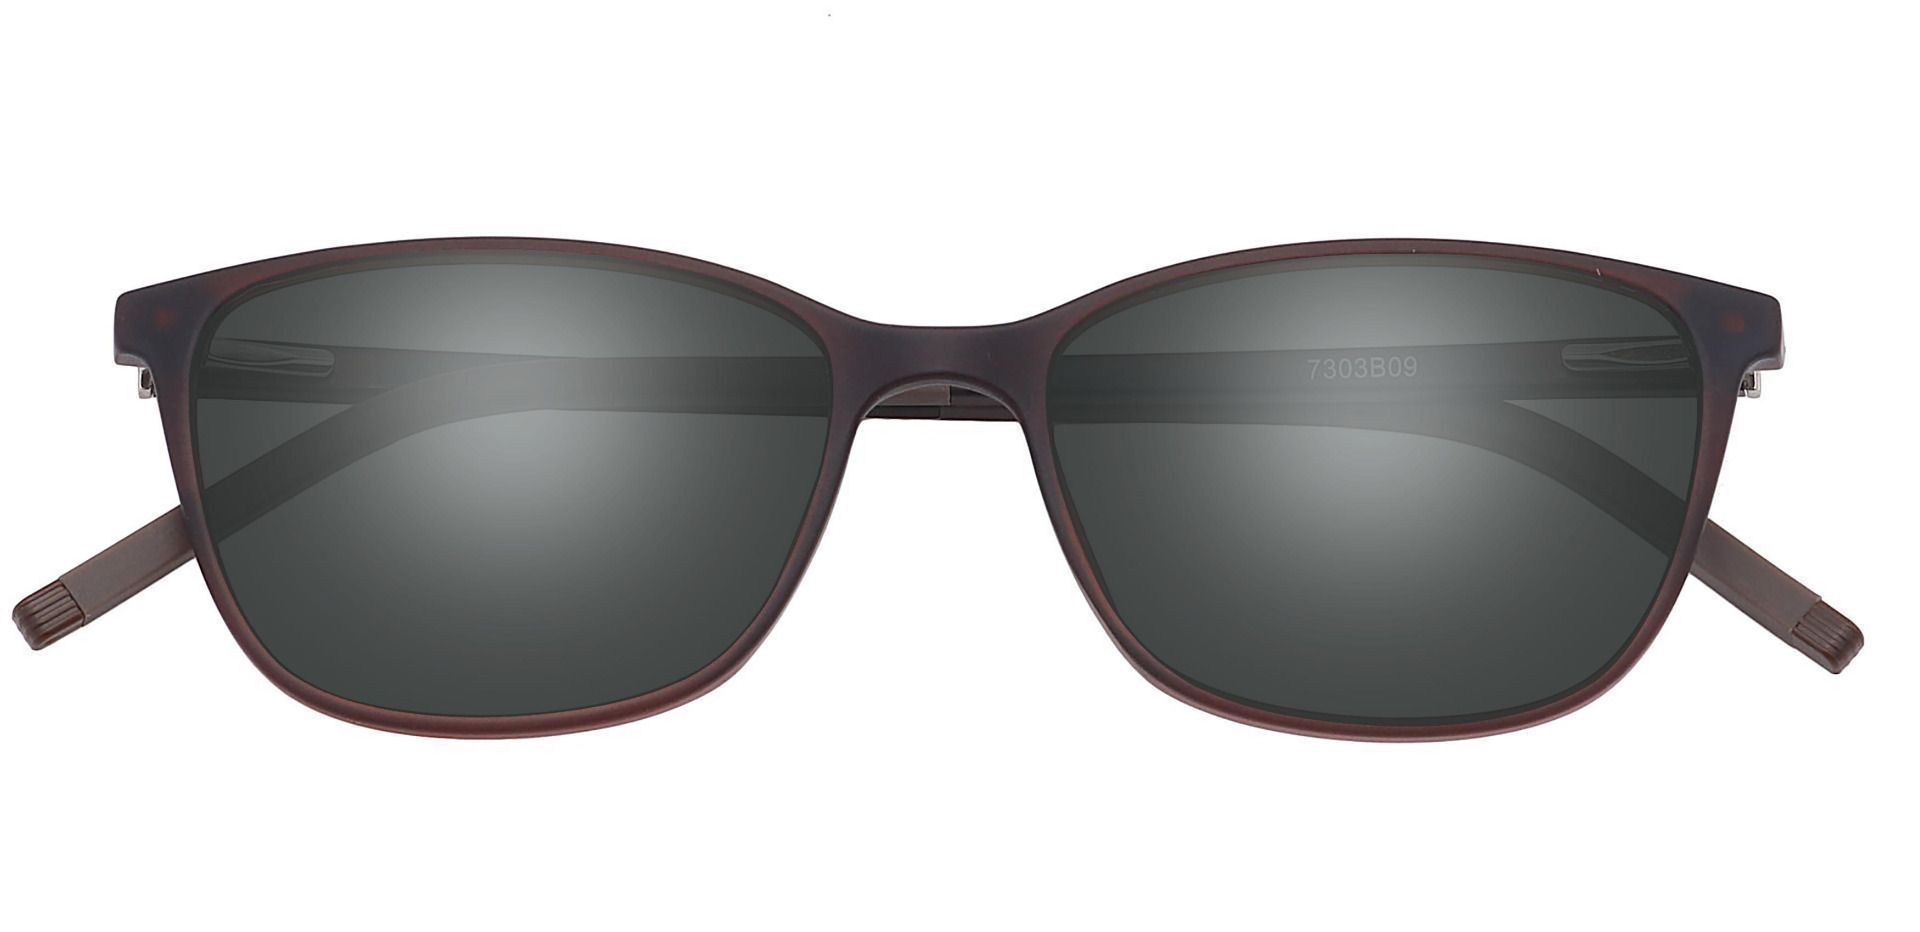 Danica Square Non-Rx Sunglasses - Brown Frame With Gray Lenses